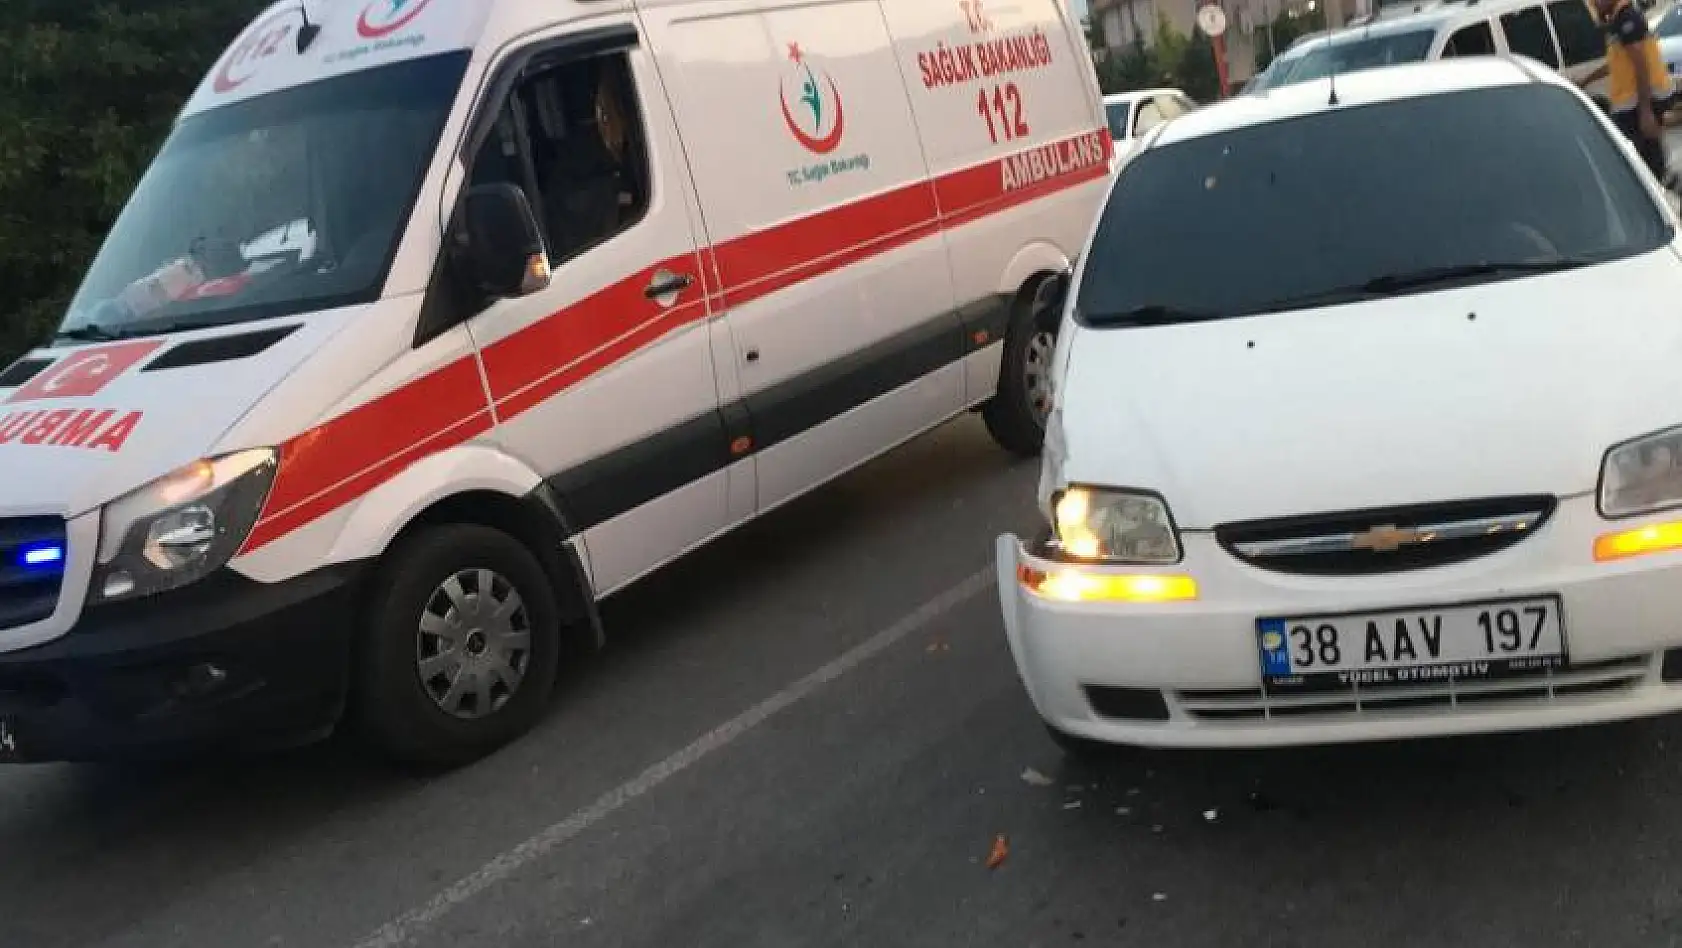 Direksiyon hakimiyeti kaybolan araç ambulansa çarptı